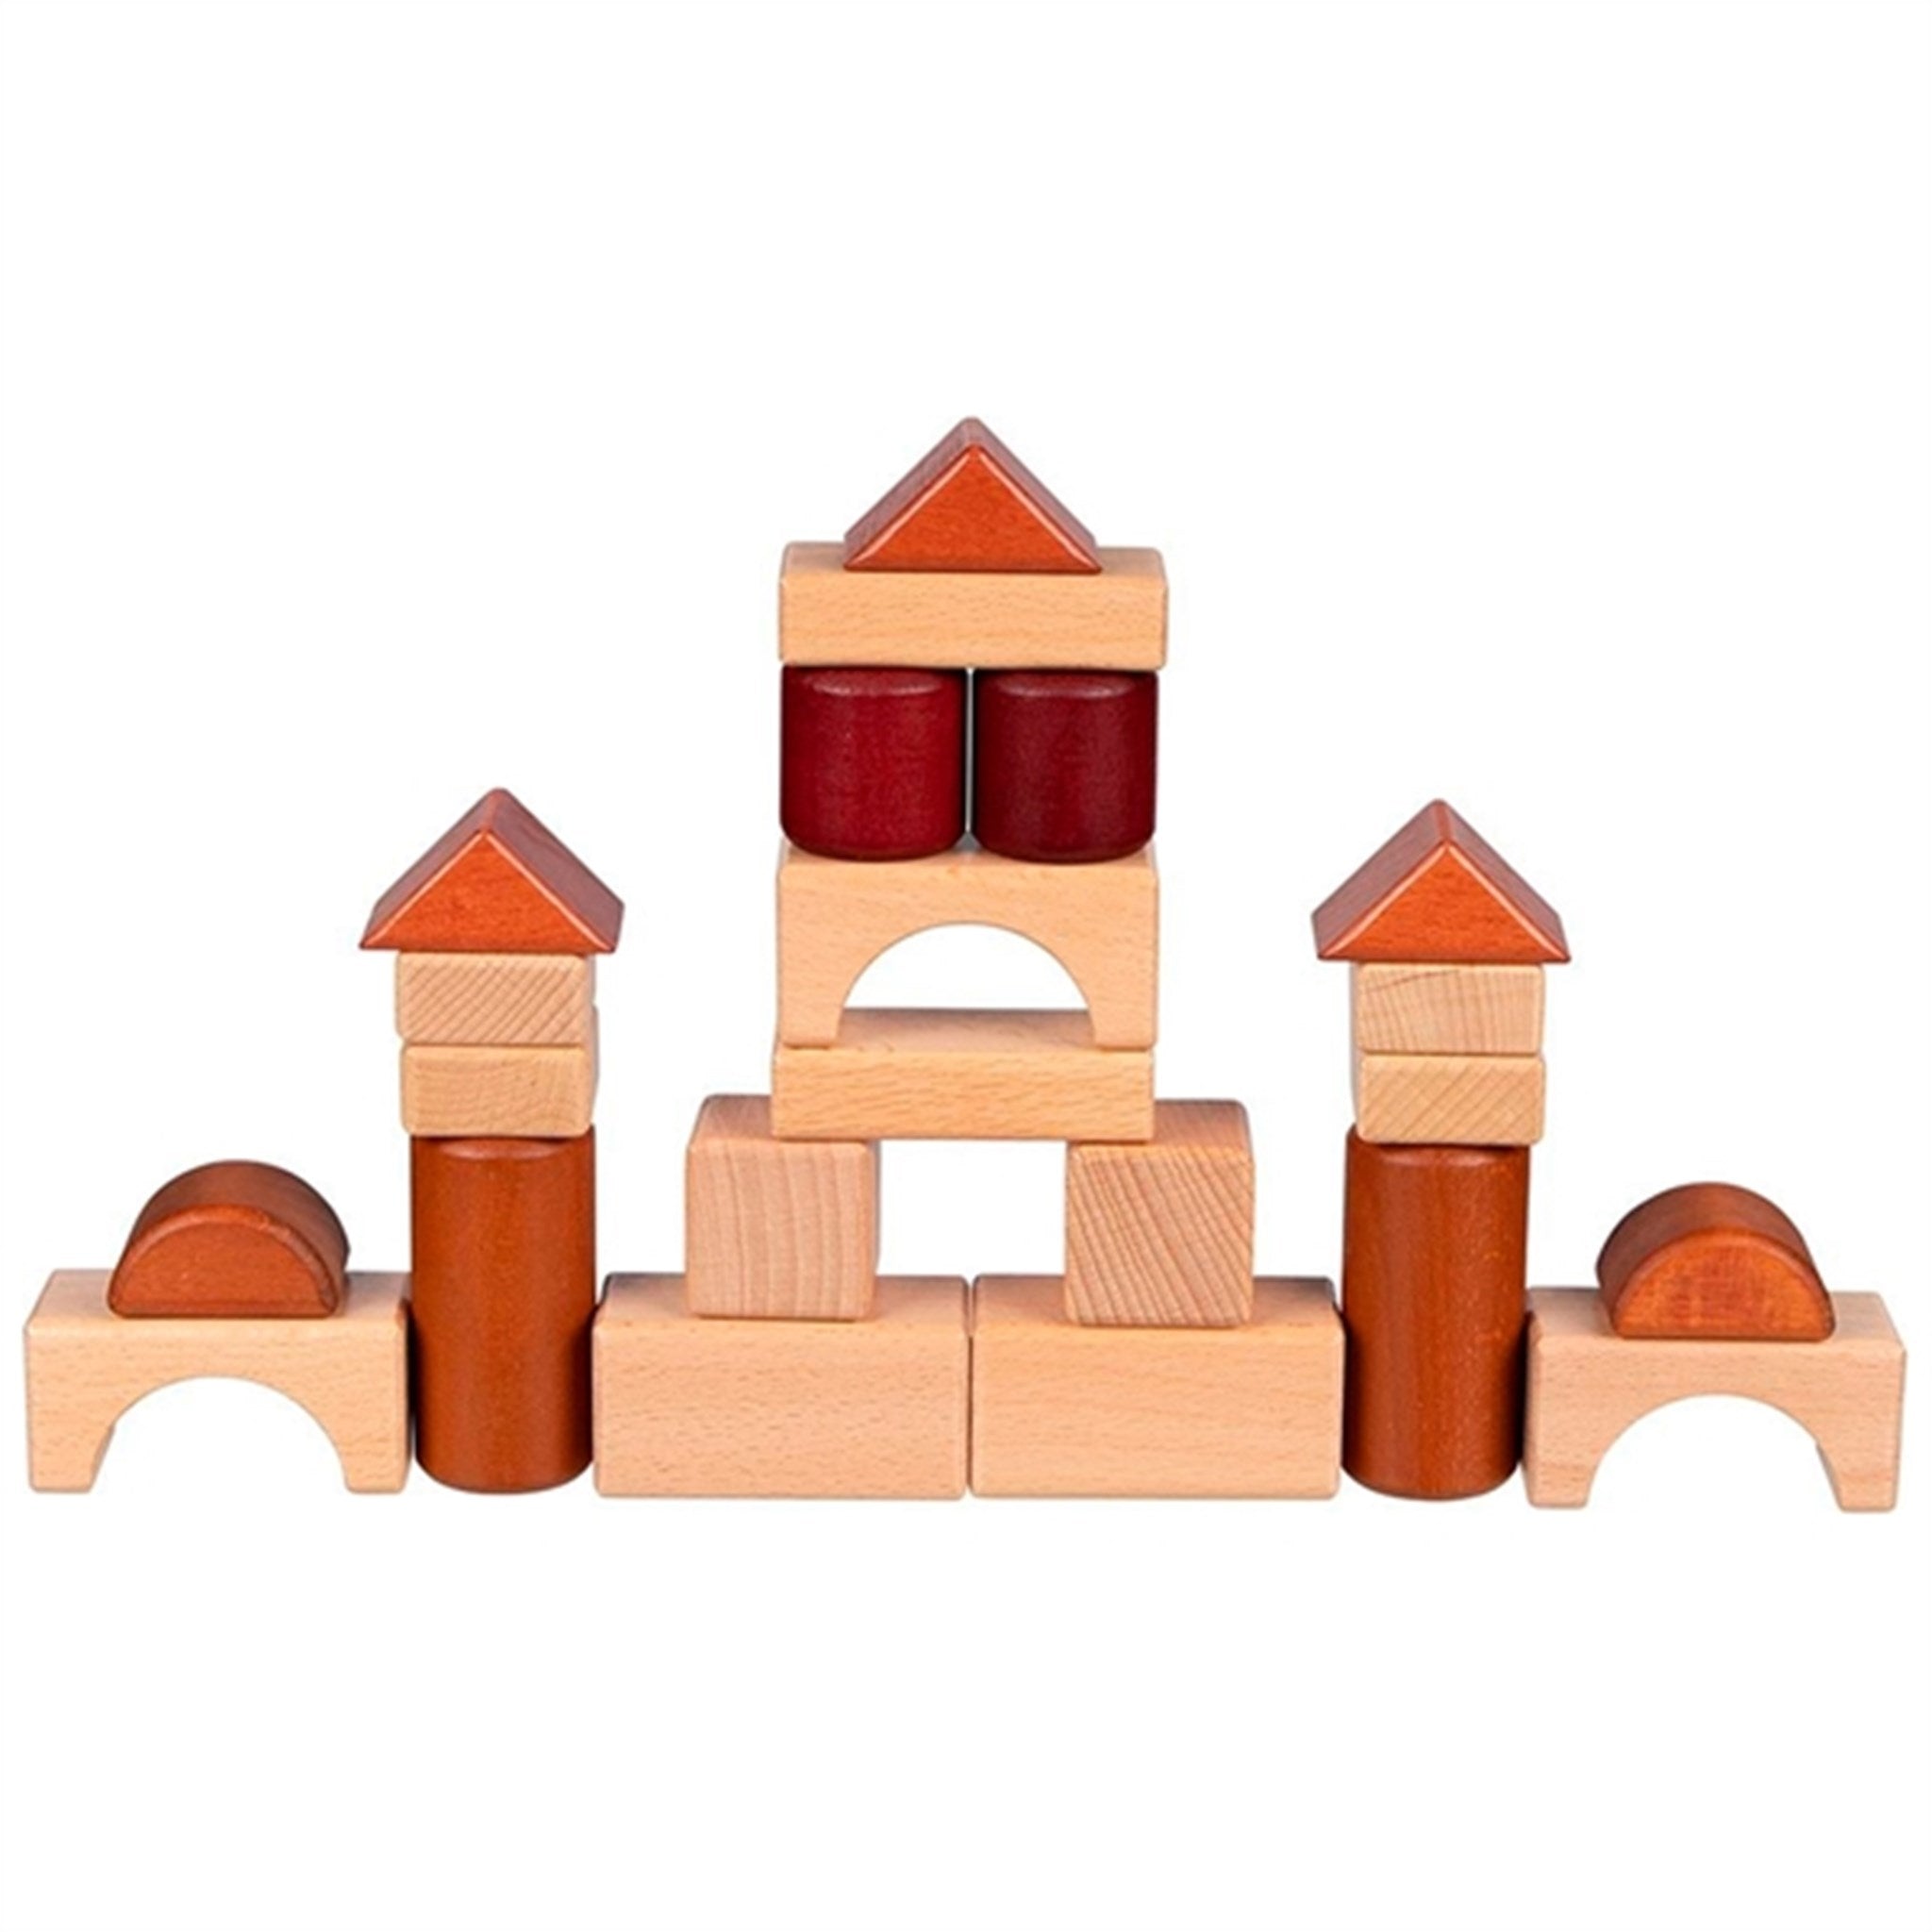 Goki Puzzle - Building Blocks 2